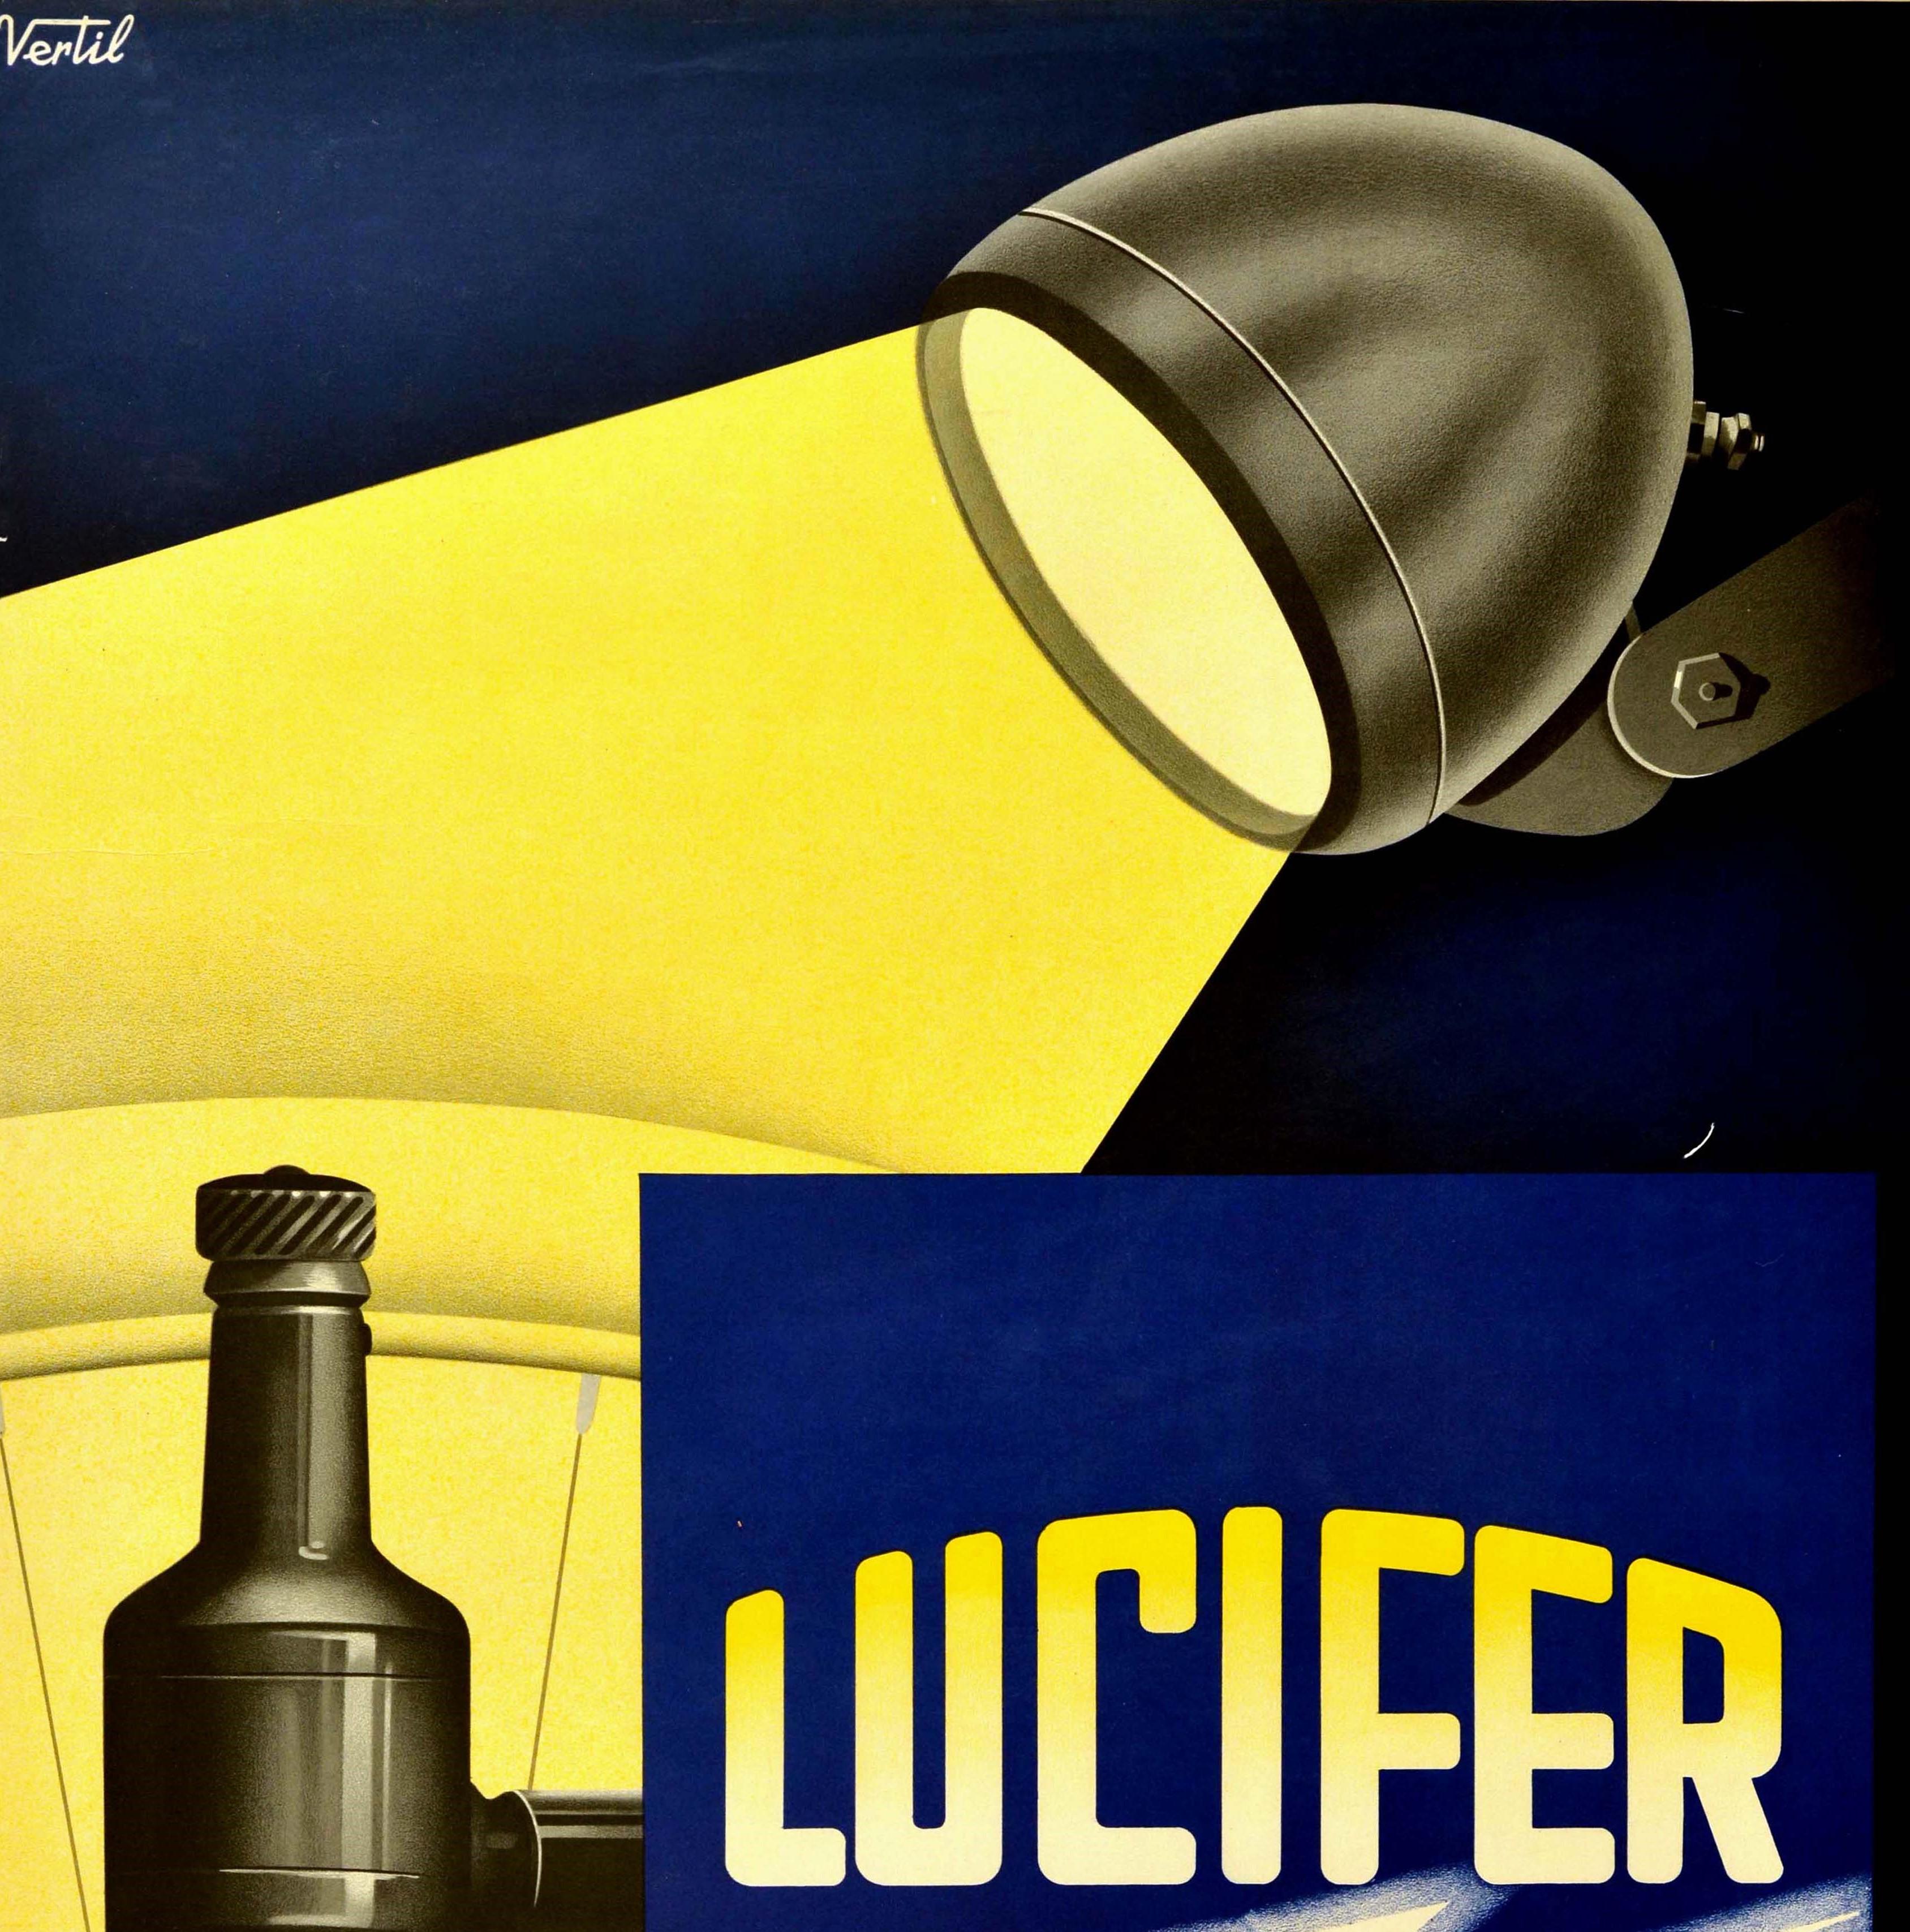 Original Vintage Poster Lucifer Geneva Electrical Bicycle Light Bulb Bike Design - Print by Vertil